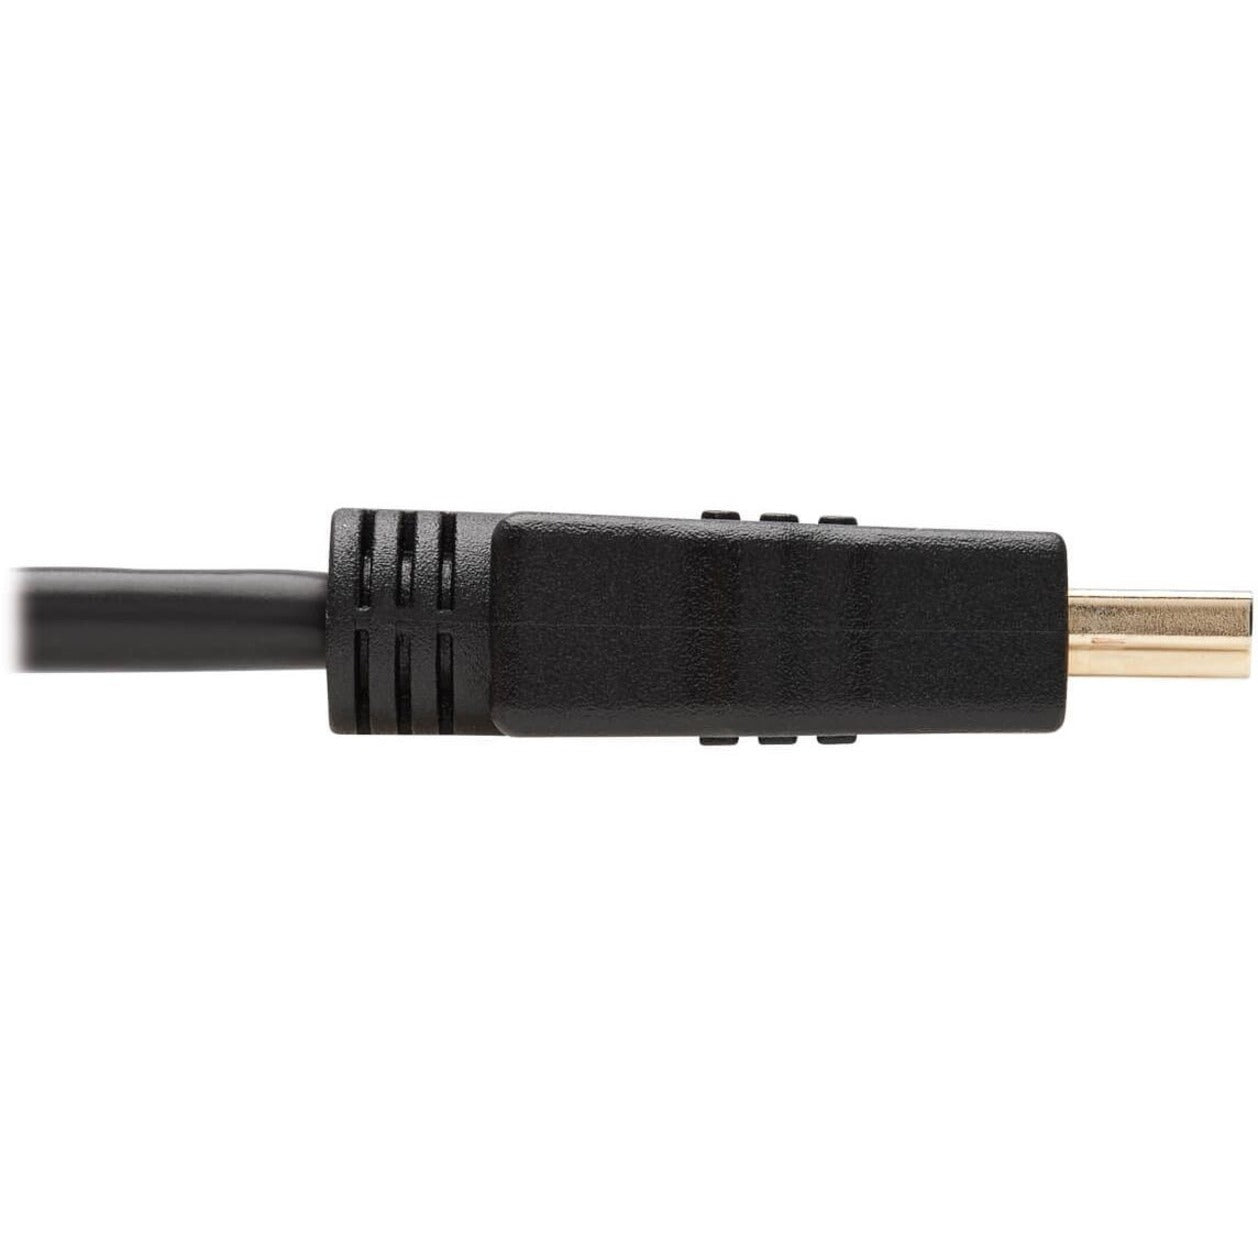 特利普·莱特 P568-006 高速音视频 HDMI 电缆，6 英尺，黑色 品牌名称：特利普·莱特